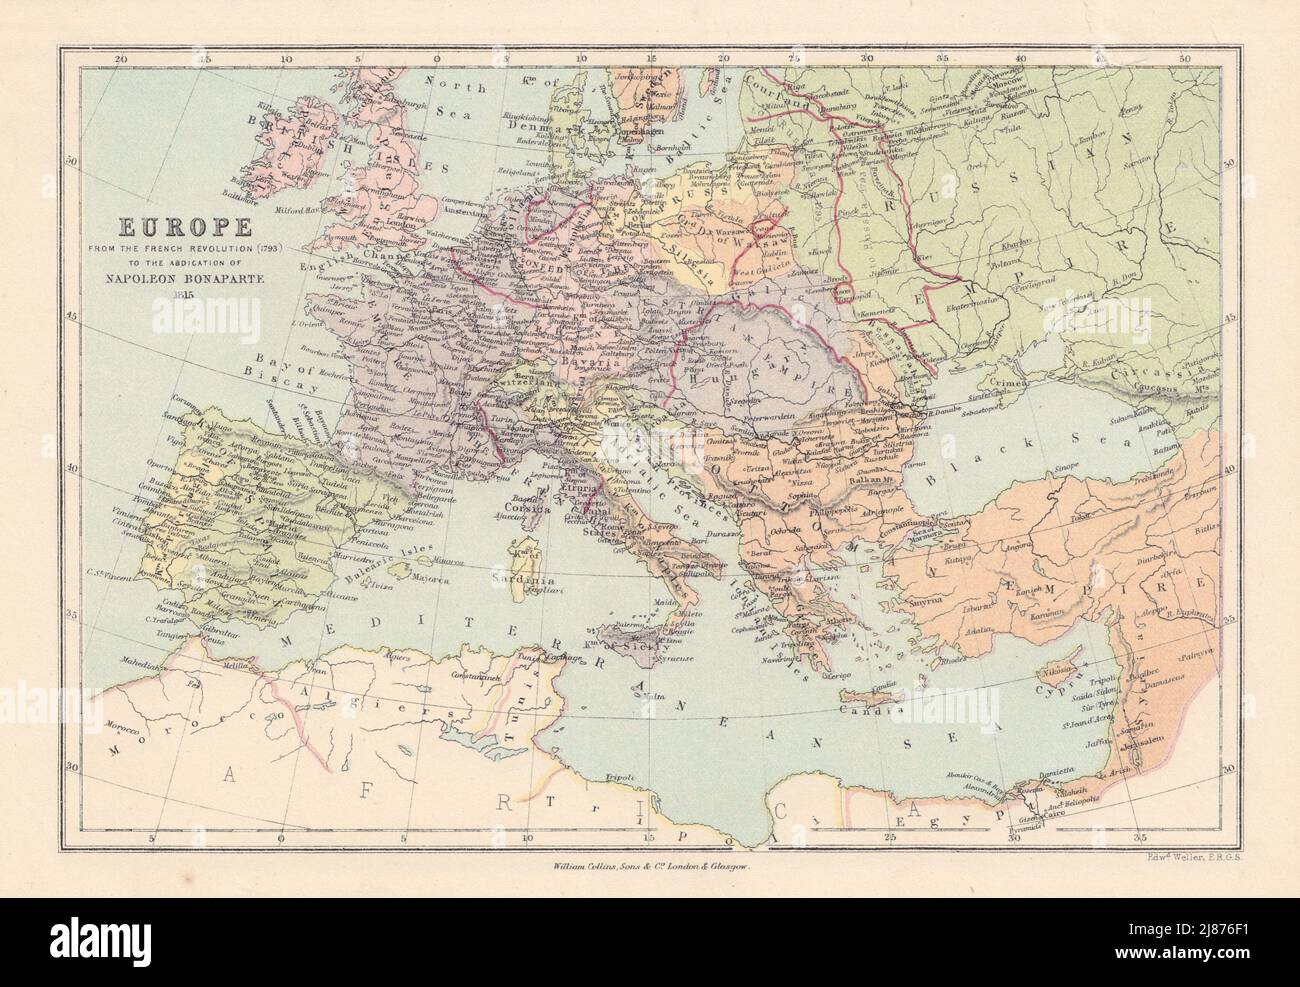 EUROPE 1793-1815 guerres napoléoniennes. Confédération du Rhin. CARTE COLLINS 1873 Banque D'Images